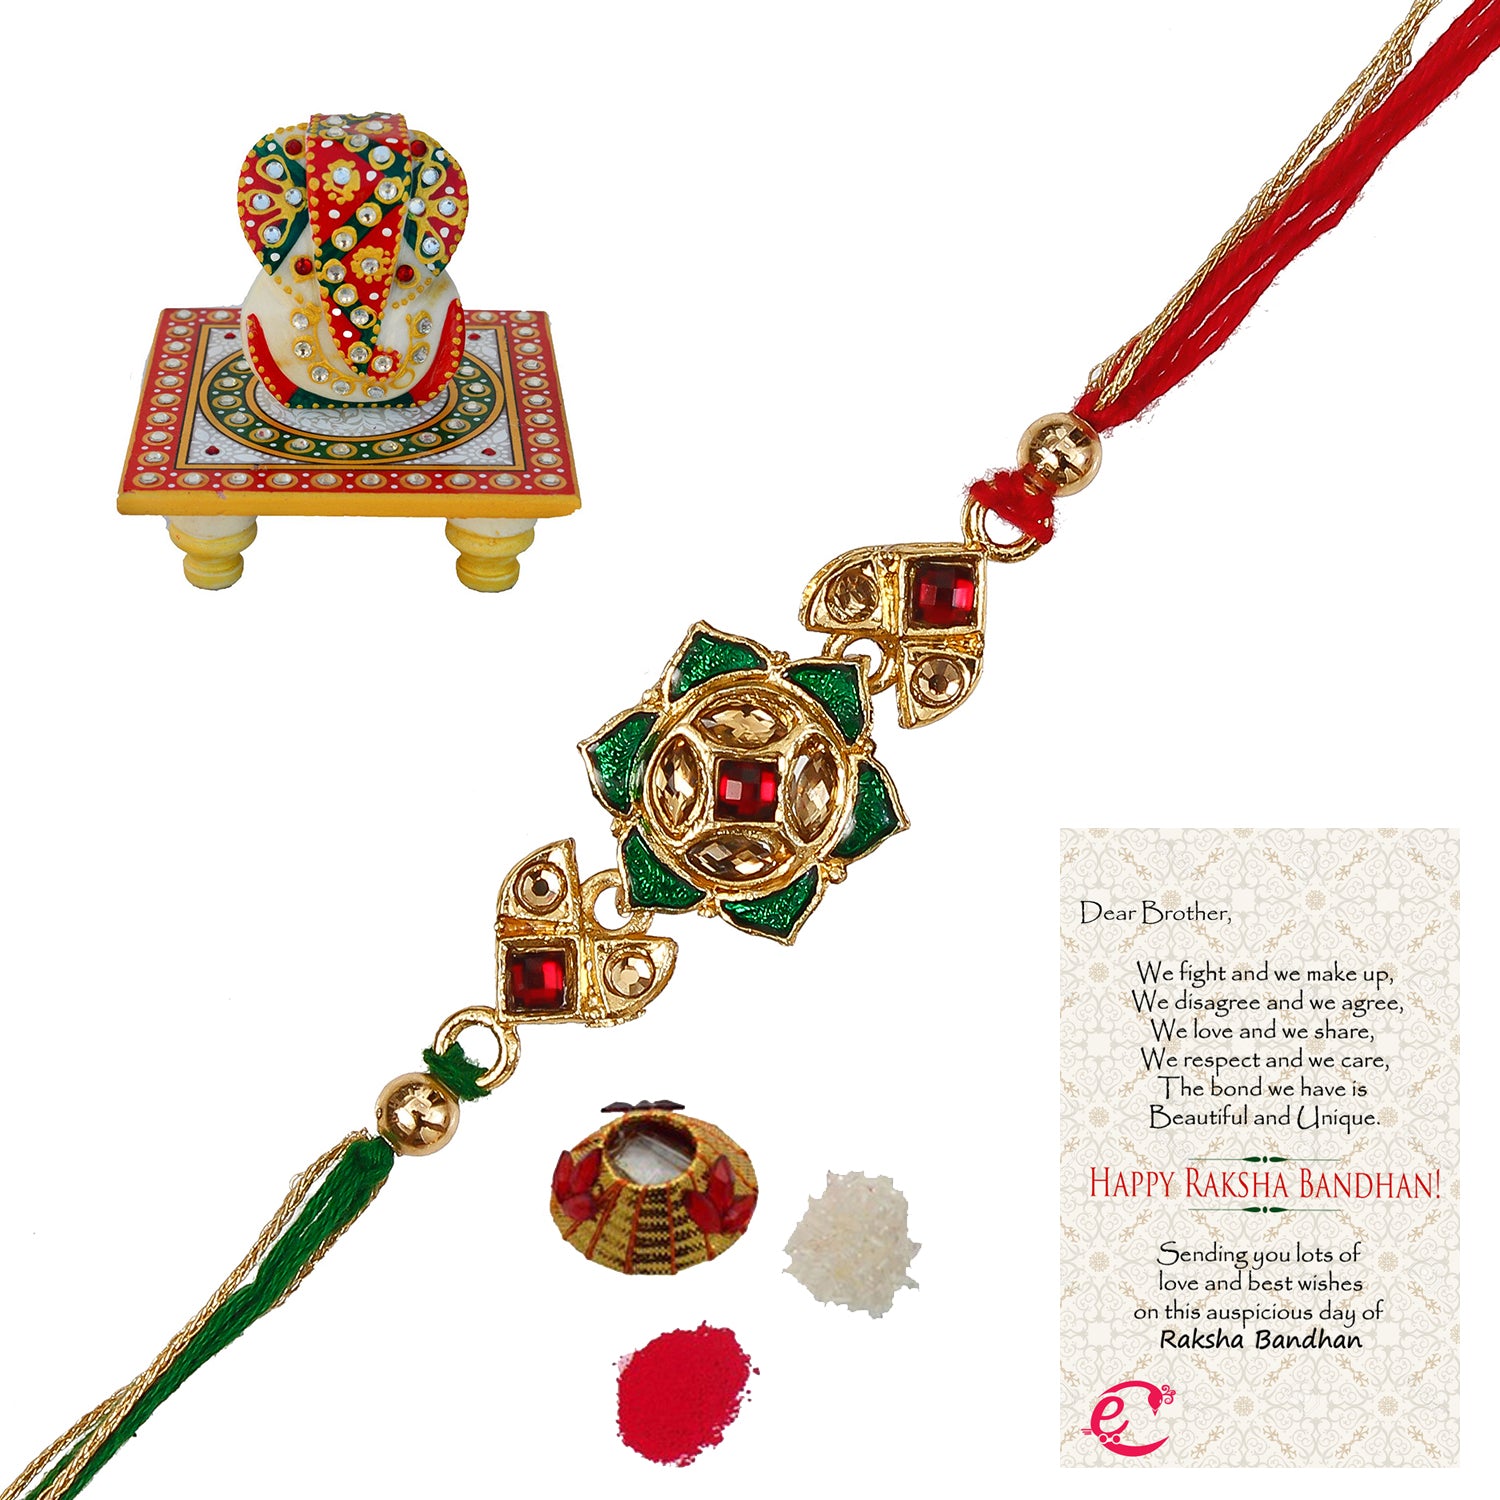 Designer Kundan Rakhi with Lord Ganesha on Kundan Studded Marble Chowki and Roli Tikka Matki, Best Wishes Greeting Card